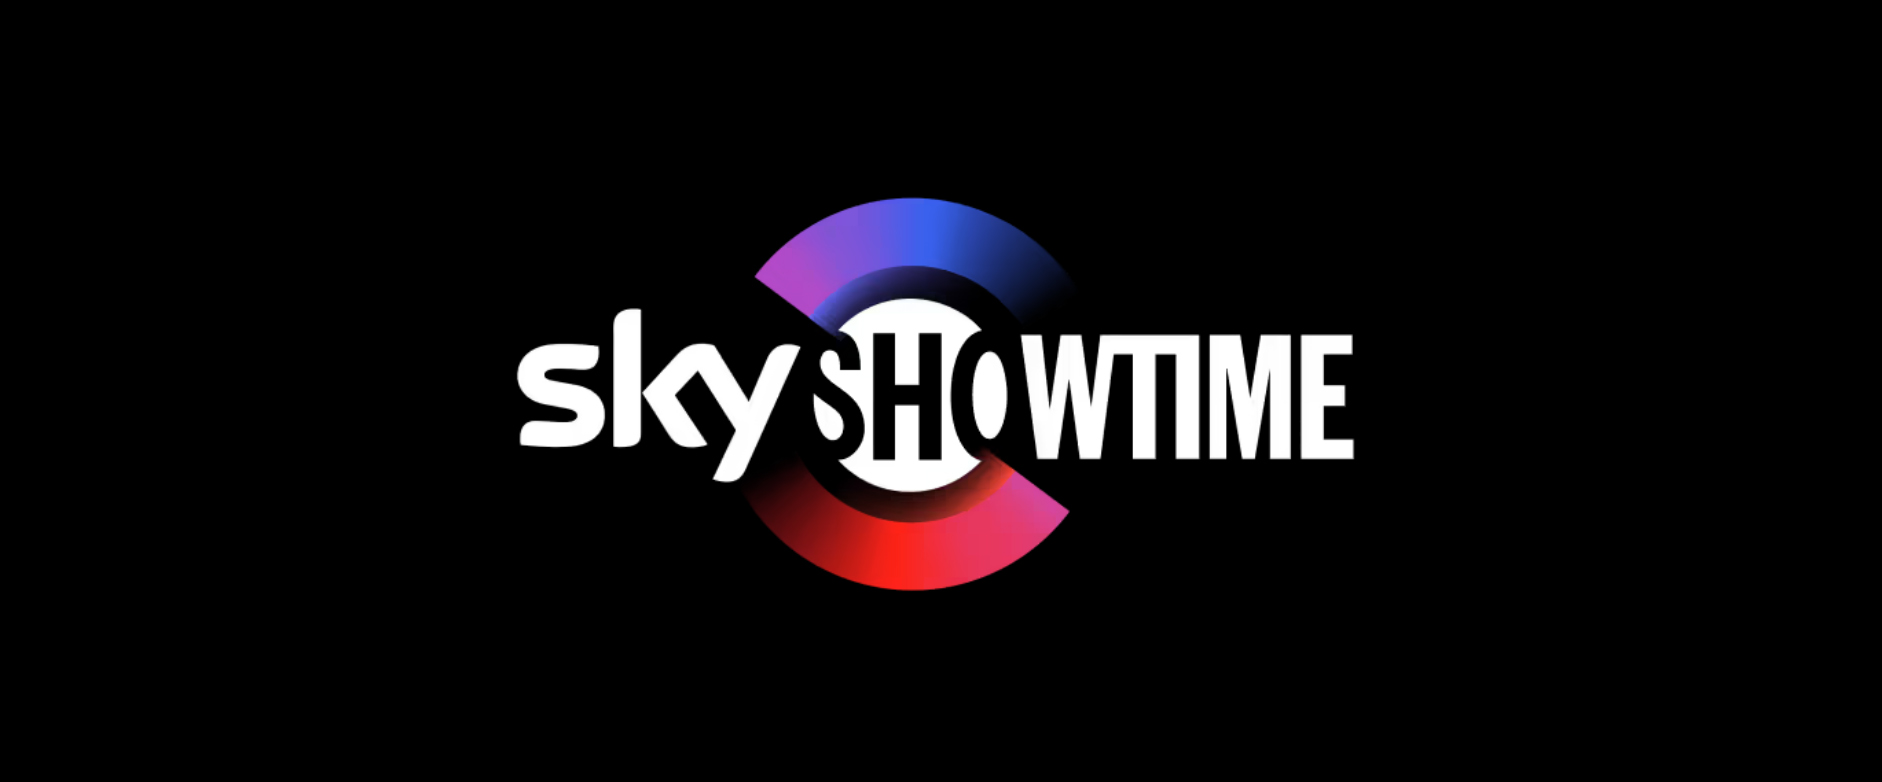 Descubre el nuevo servicio de SkyShowtime